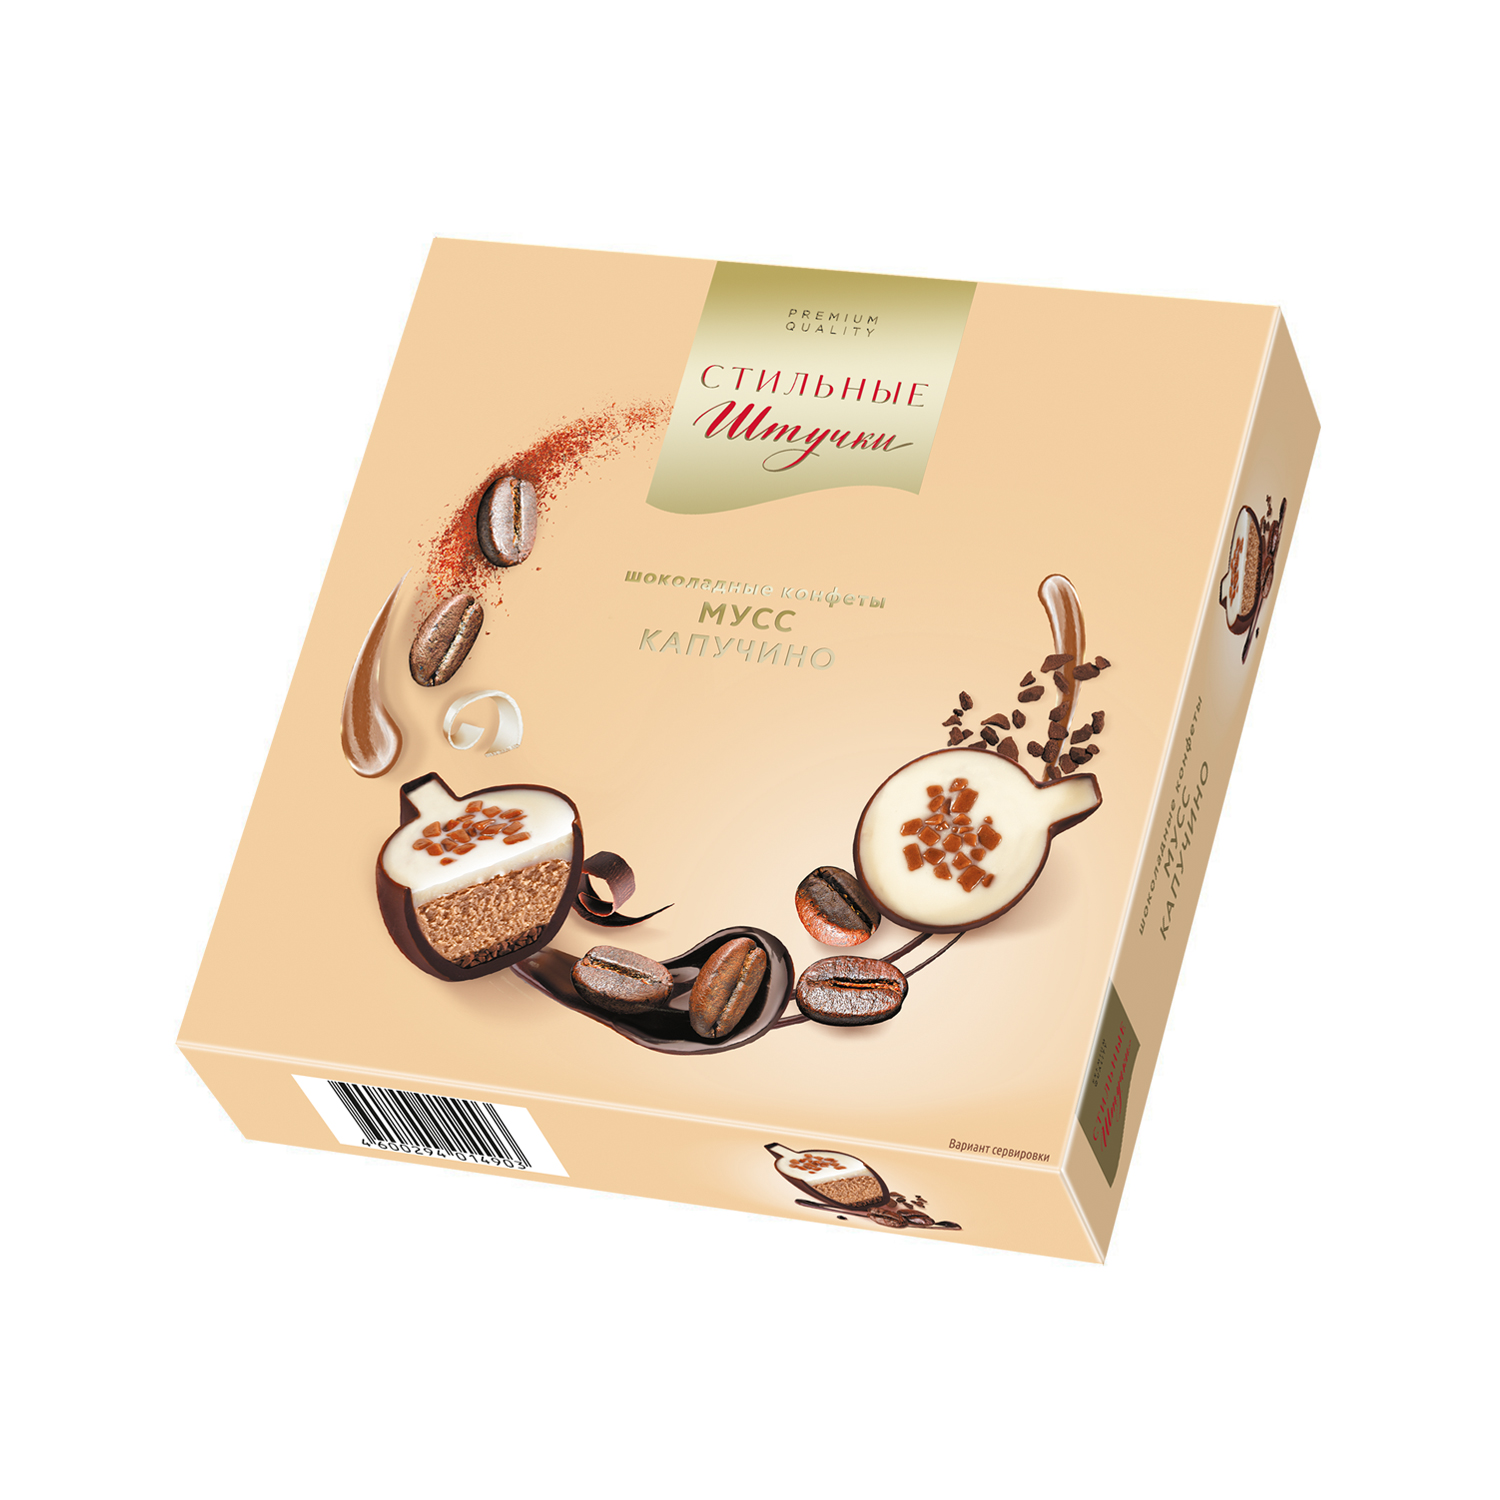 Шоколадные конфеты Стильные штучки Мусс капучино в подарочной коробке 104 г - фото 1